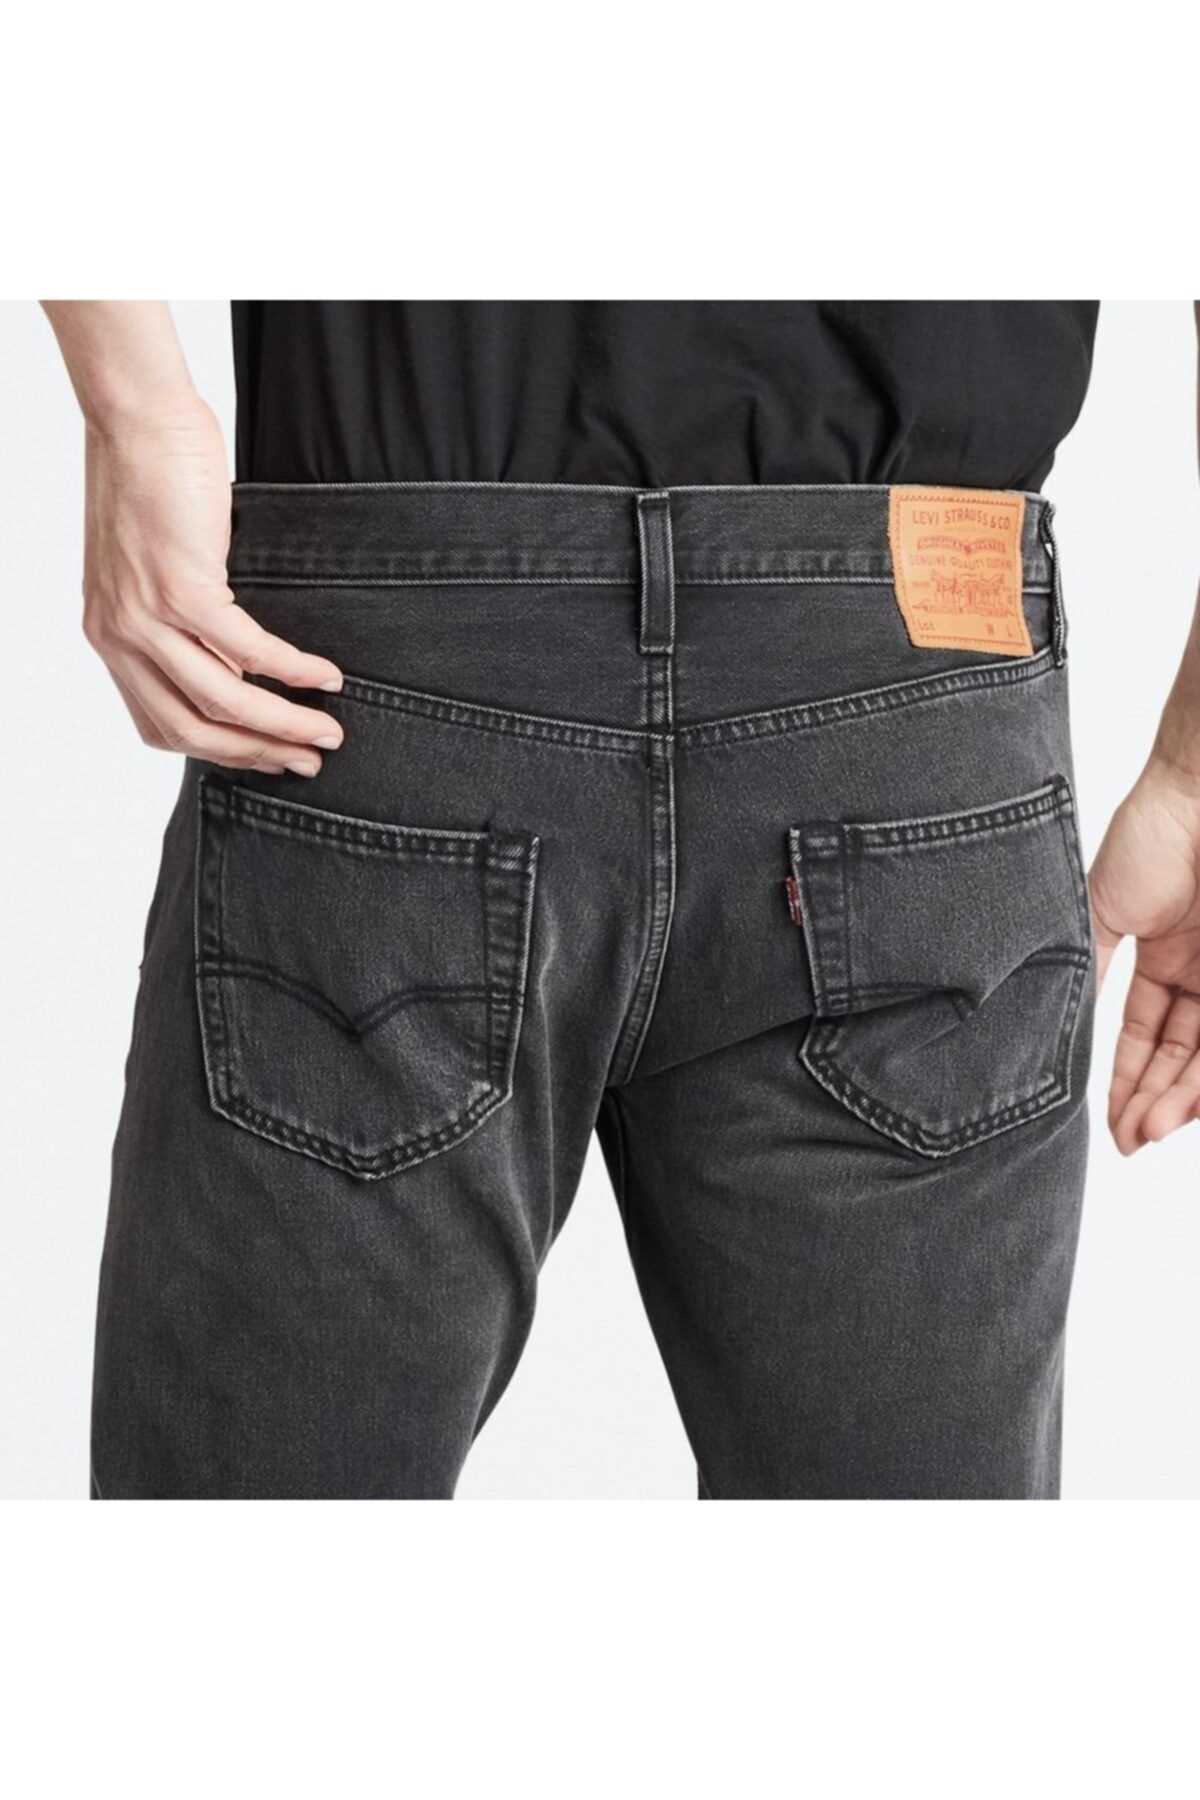 شلوار جین مردانه ارزان قیمت شیک Levis رنگ نقره ای کد ty32170122